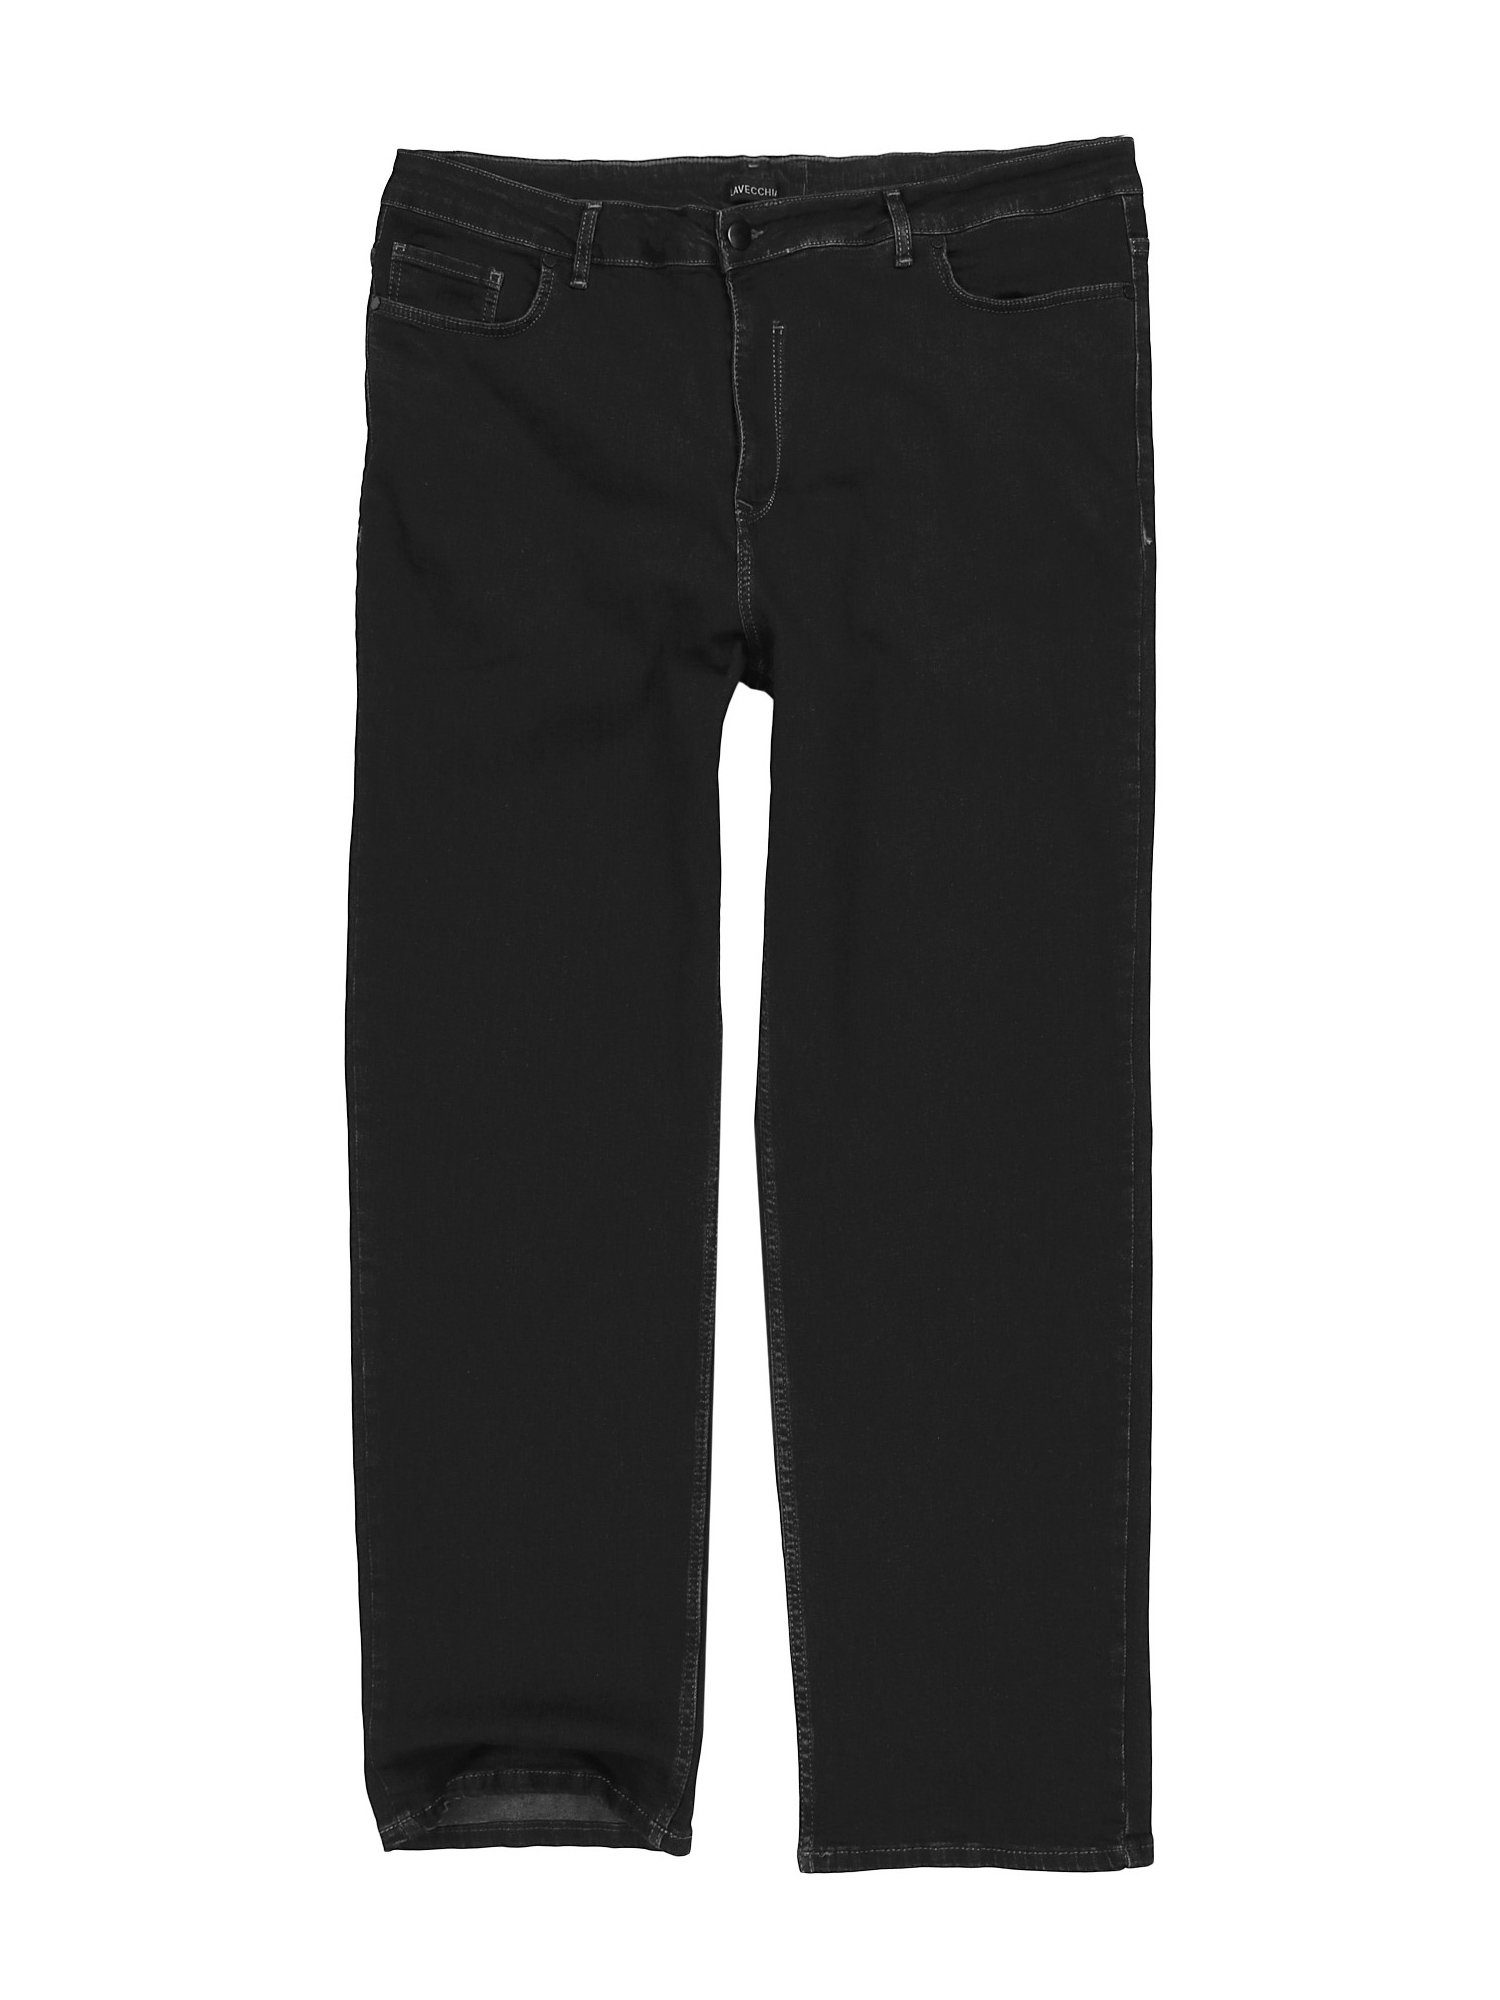 Übergrößen mit Elasthan Lavecchia Stretch schwarz Jeanshose Herren Comfort-fit-Jeans LV-501